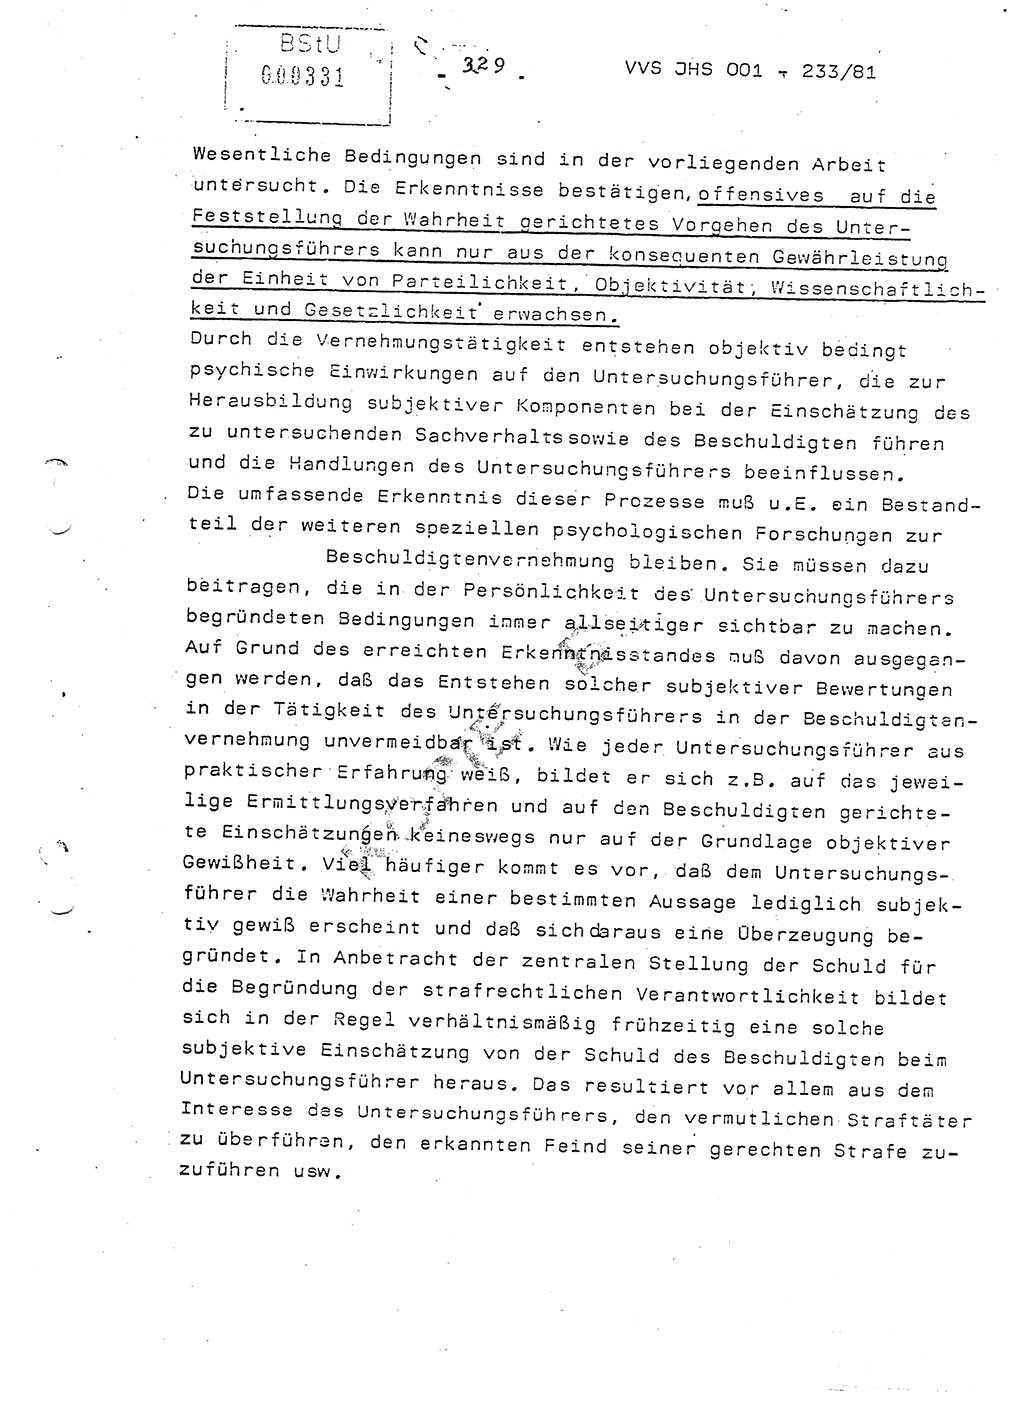 Dissertation Oberstleutnant Horst Zank (JHS), Oberstleutnant Dr. Karl-Heinz Knoblauch (JHS), Oberstleutnant Gustav-Adolf Kowalewski (HA Ⅸ), Oberstleutnant Wolfgang Plötner (HA Ⅸ), Ministerium für Staatssicherheit (MfS) [Deutsche Demokratische Republik (DDR)], Juristische Hochschule (JHS), Vertrauliche Verschlußsache (VVS) o001-233/81, Potsdam 1981, Blatt 329 (Diss. MfS DDR JHS VVS o001-233/81 1981, Bl. 329)